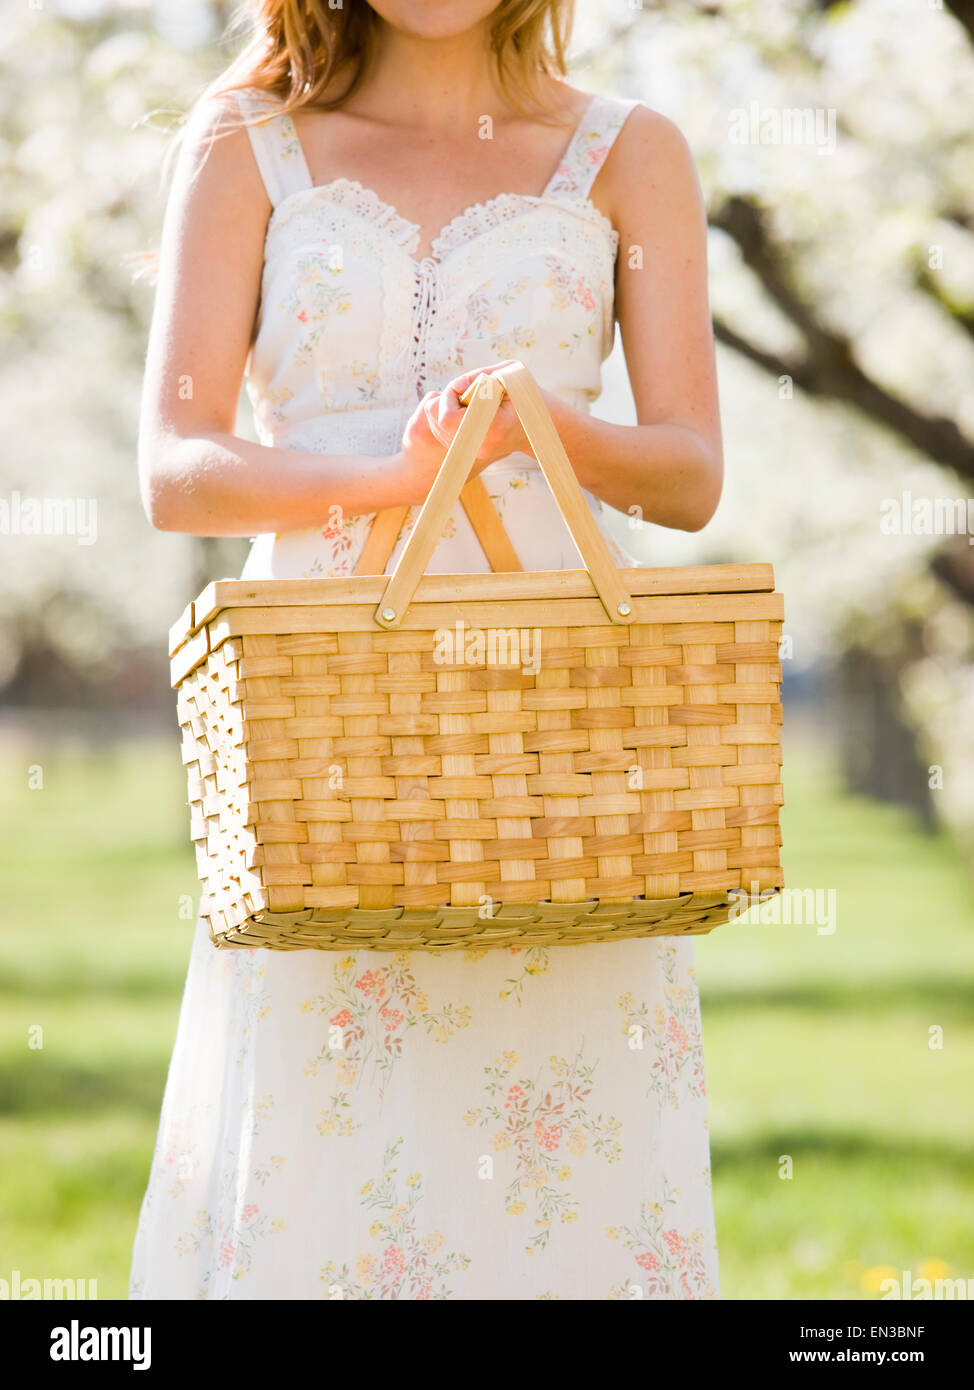 Femme en robe blanche tenant un panier de pique-nique Banque D'Images